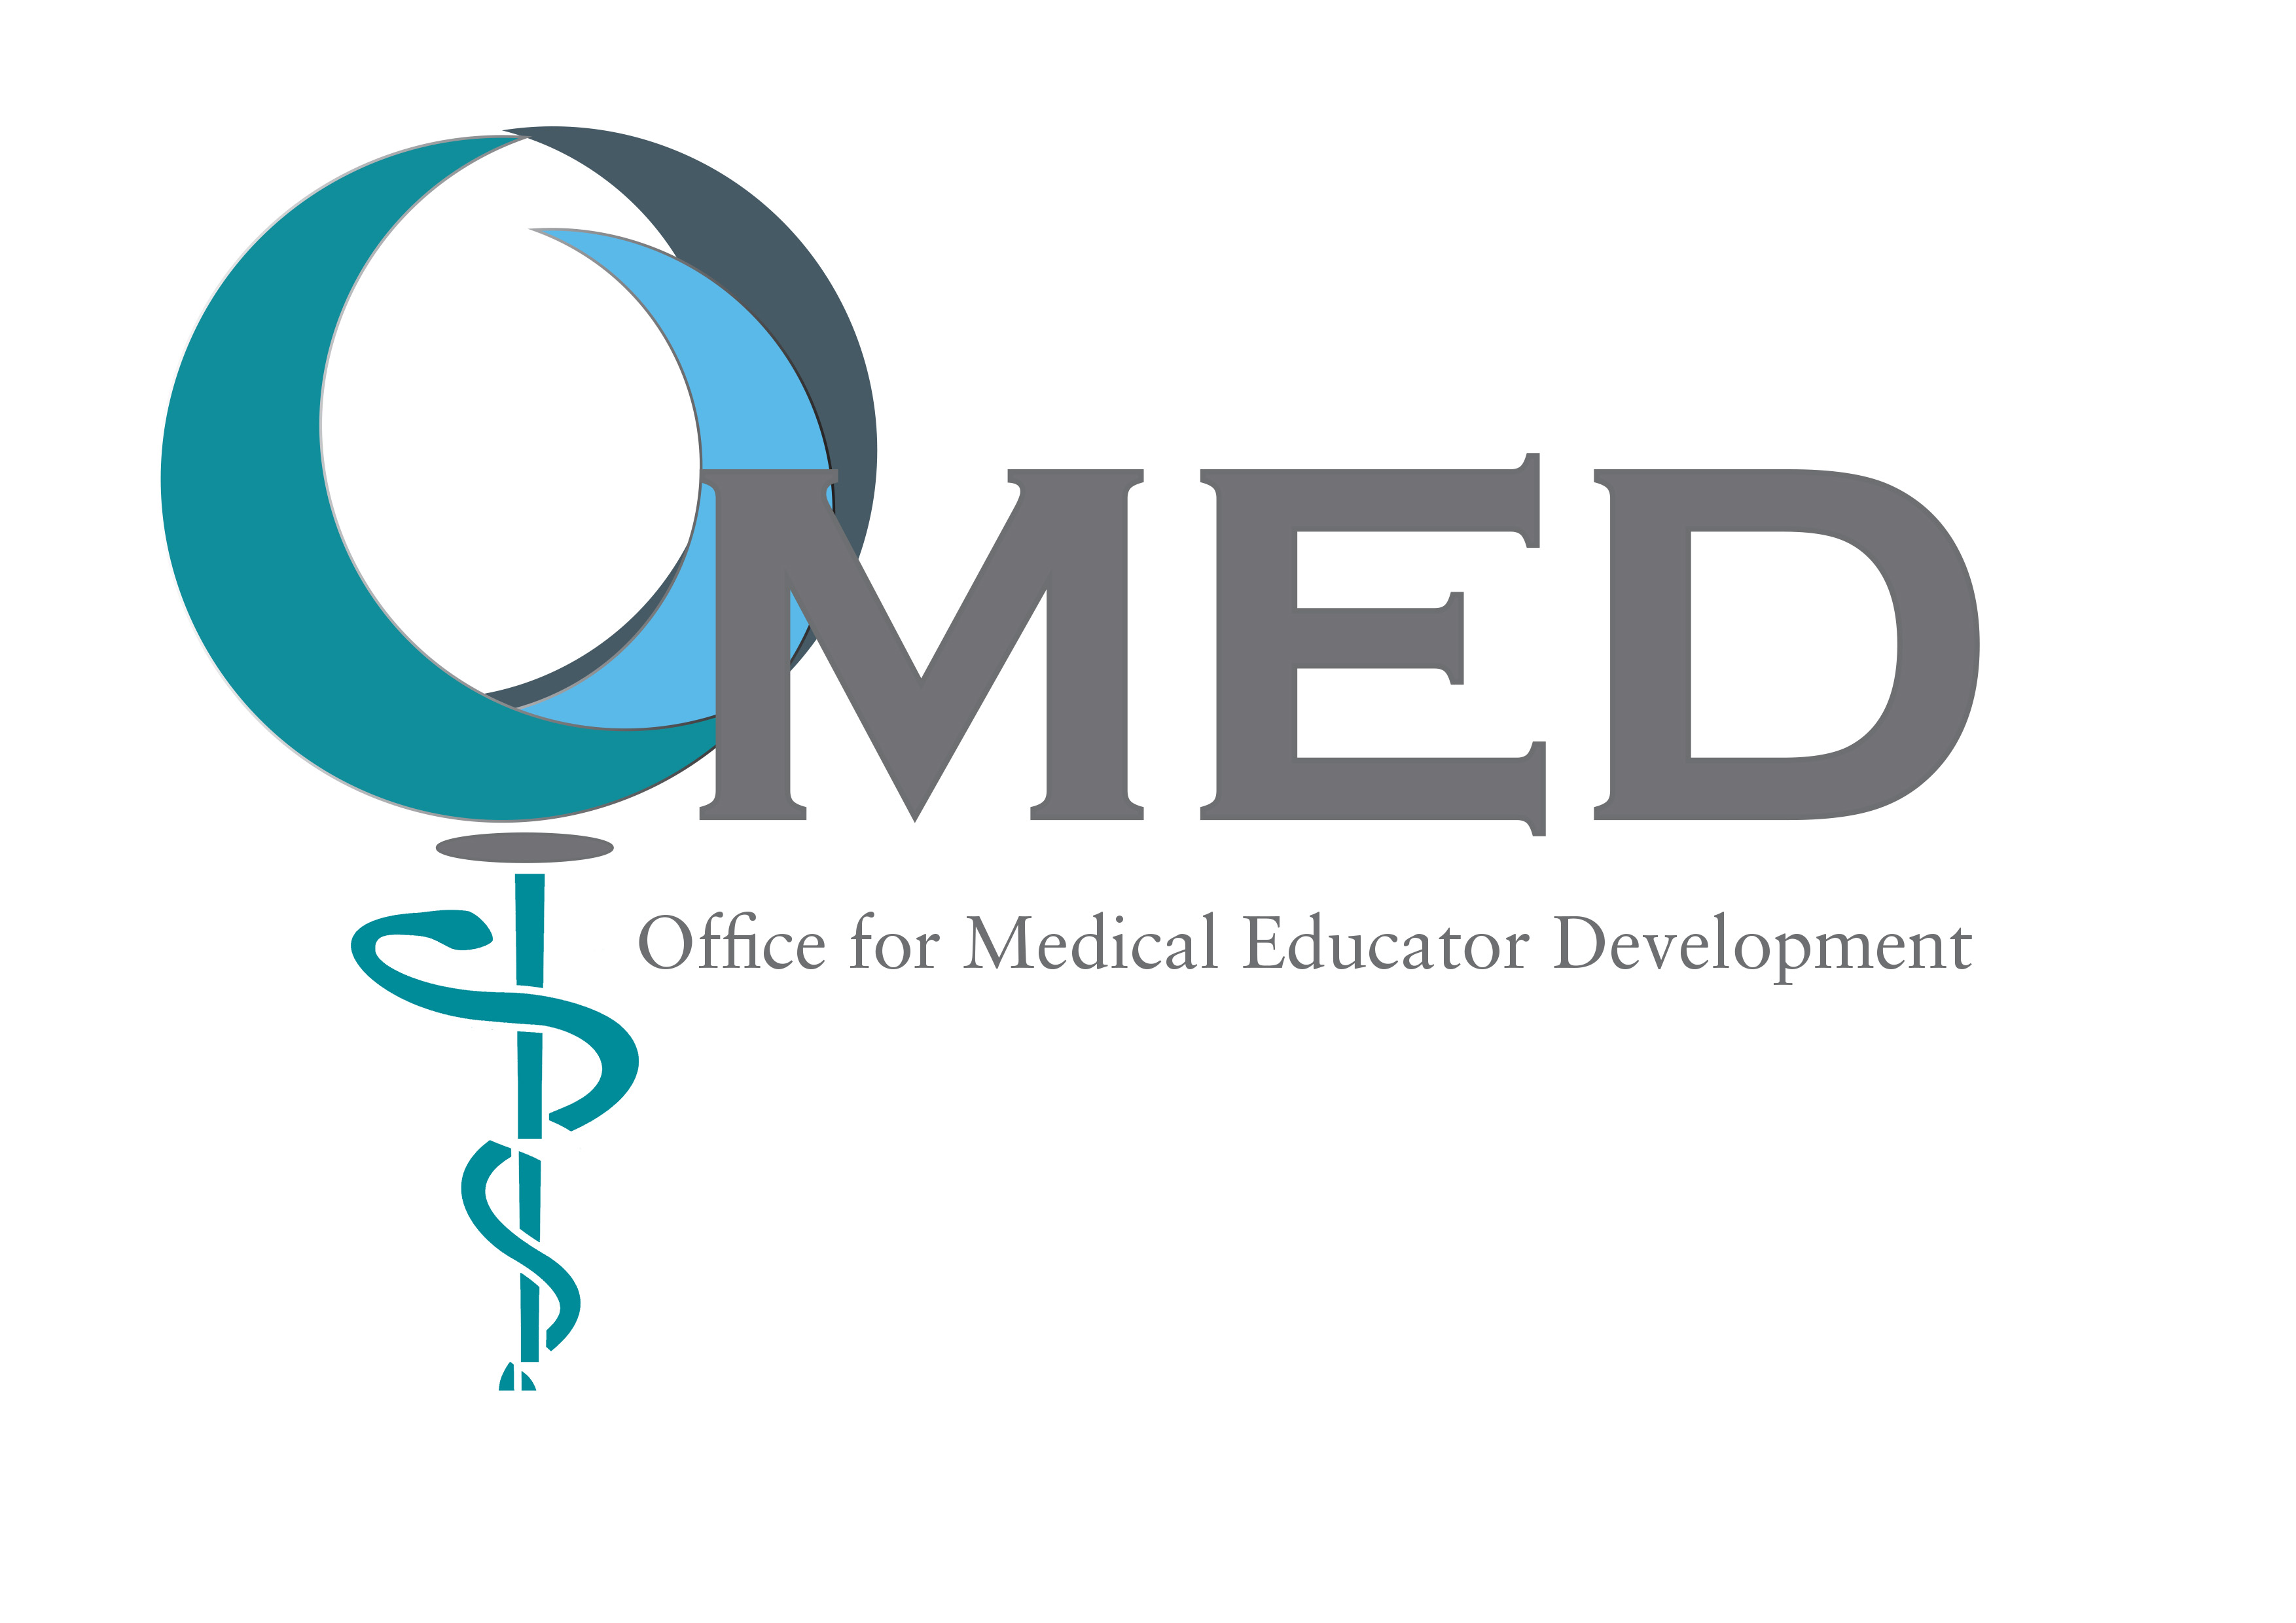 Office for Medical Educator Development (OMED)